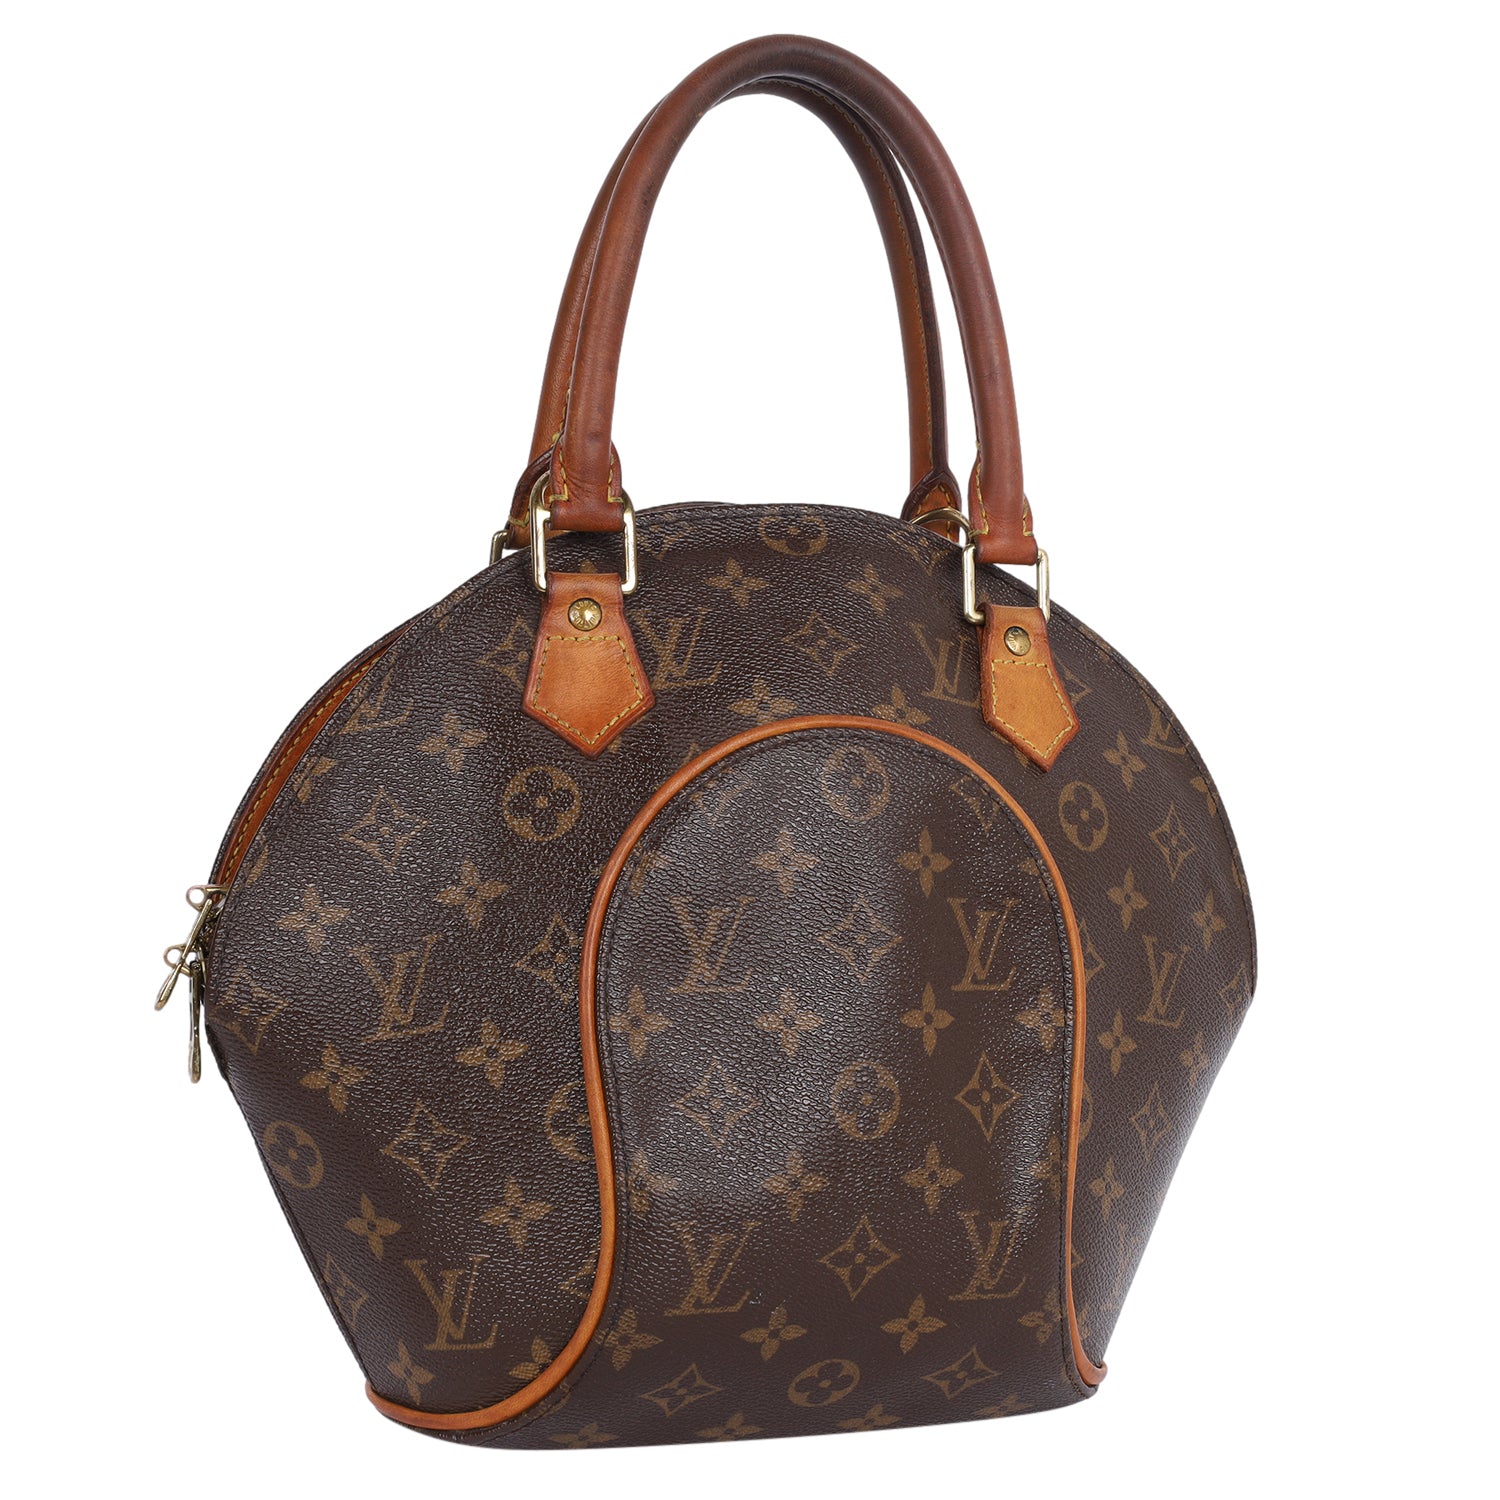 Pre-owned Authentic Louis Vuitton Ellipse PM Monogram Handbag for